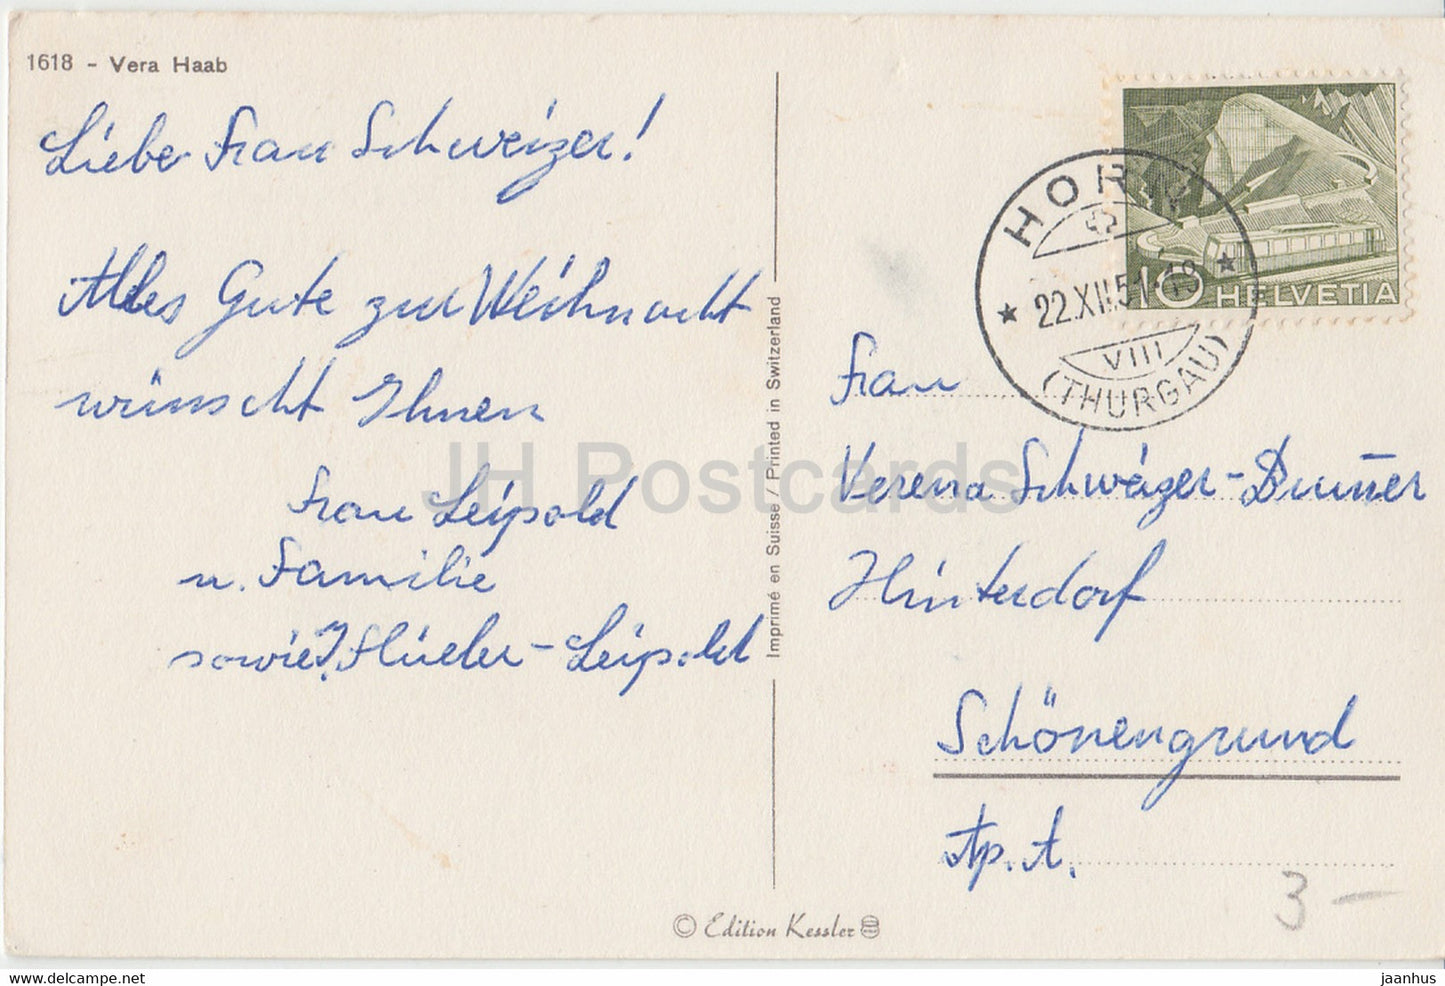 Carte de vœux de Noël - Gesegnete Weihnachten - garçon - lapin - Vera Haab - carte postale ancienne - 1951 - Suisse - utilisé